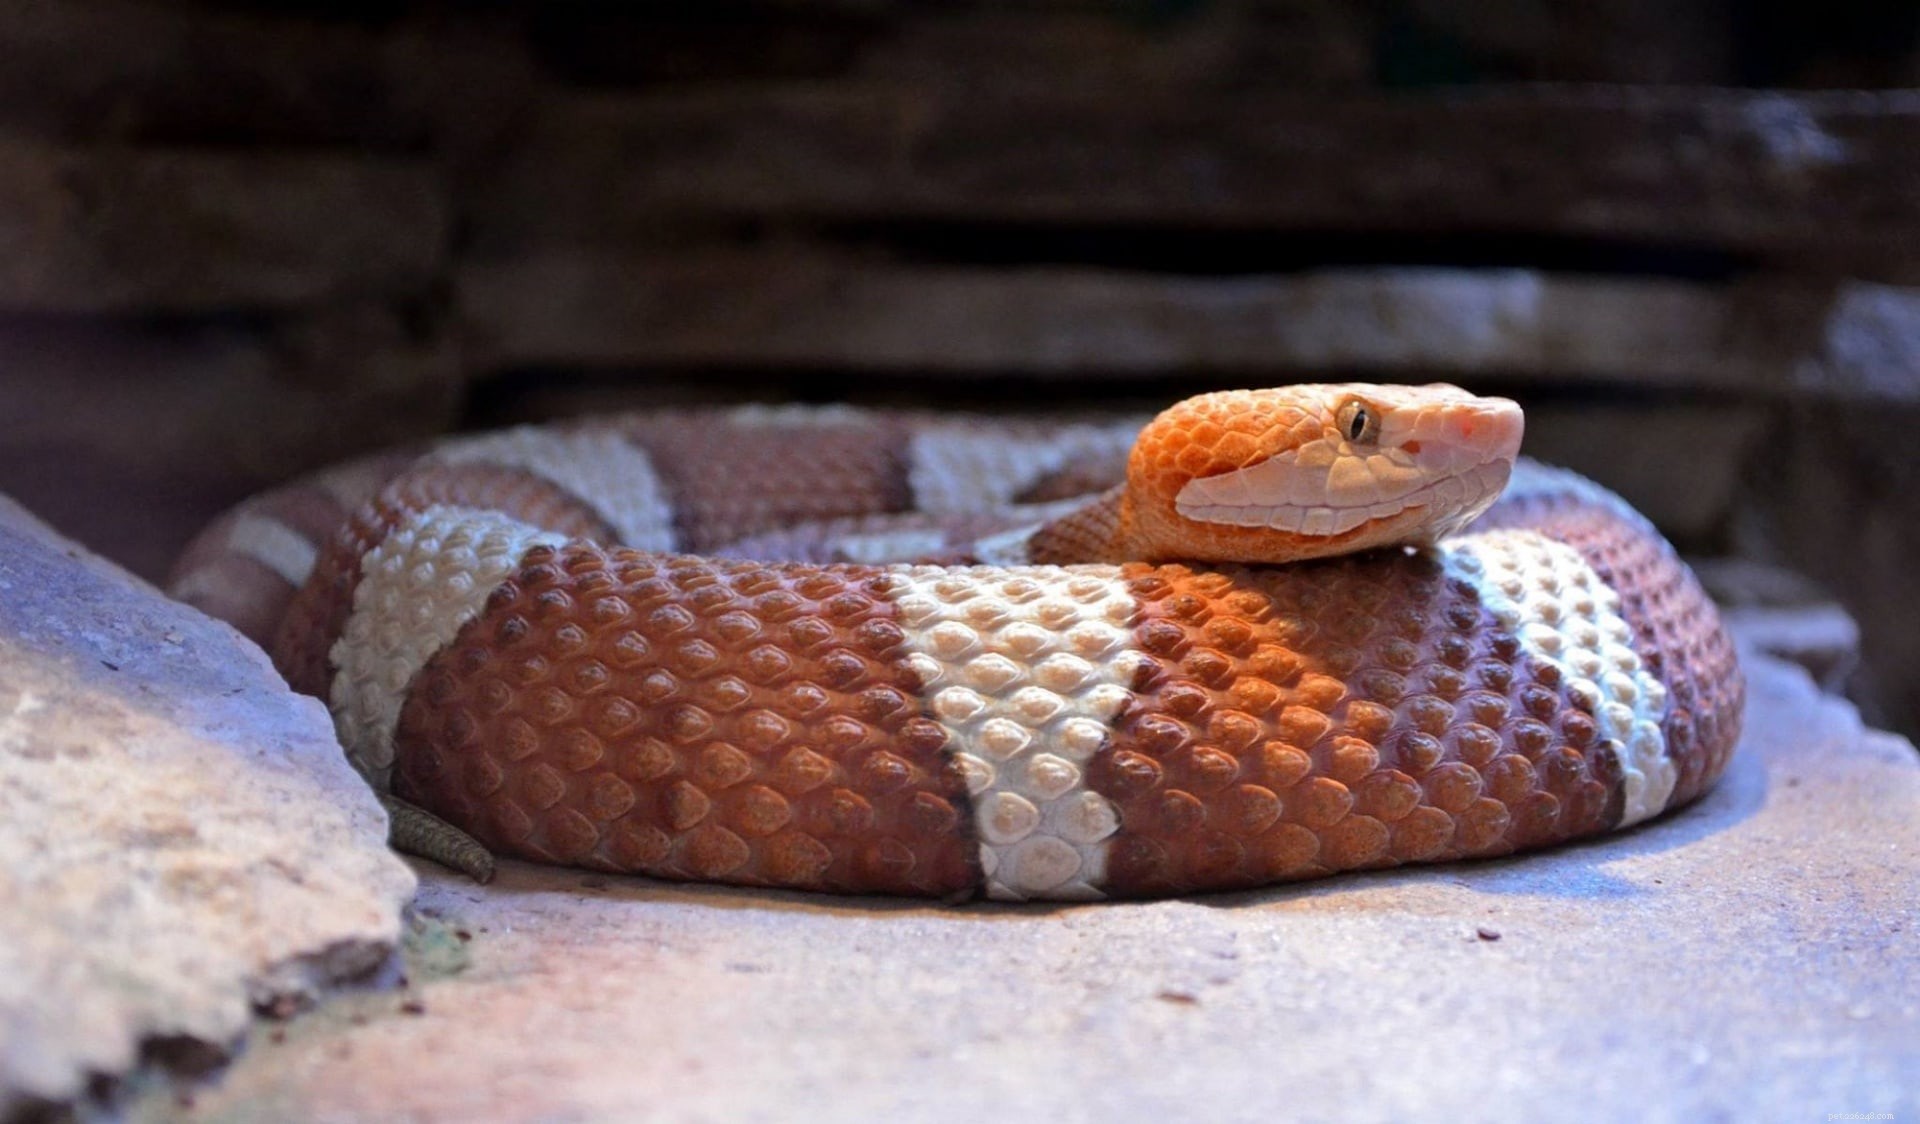 44 змеи, найденные в Оклахоме (с фотографиями)